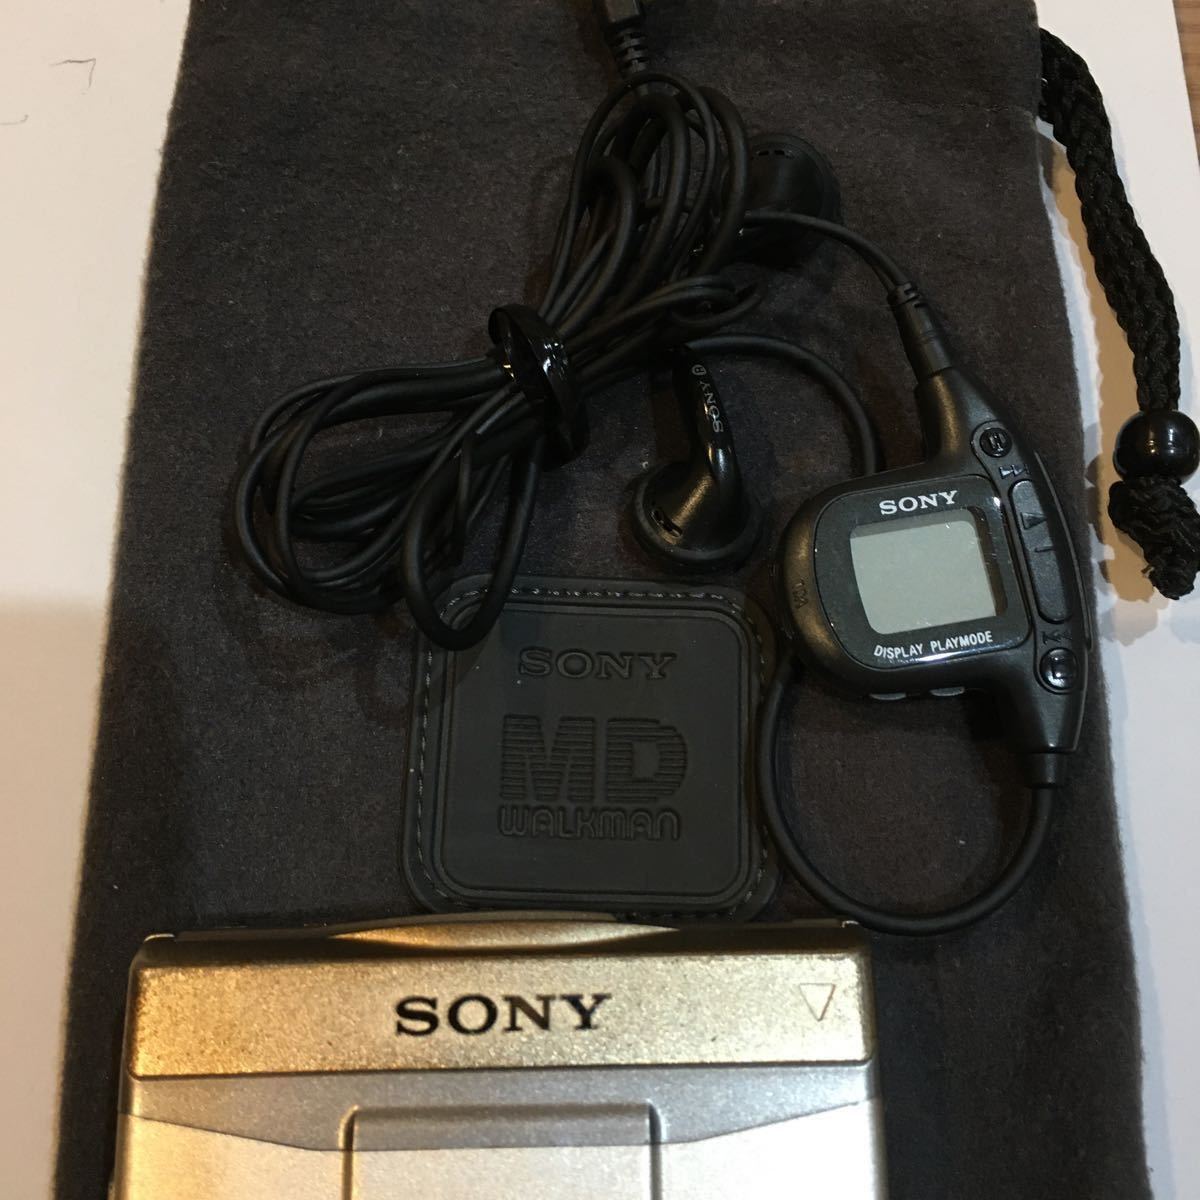 SONY MD Walkman MZ-EPS11 WALKMAN Sony period thing limitation color 